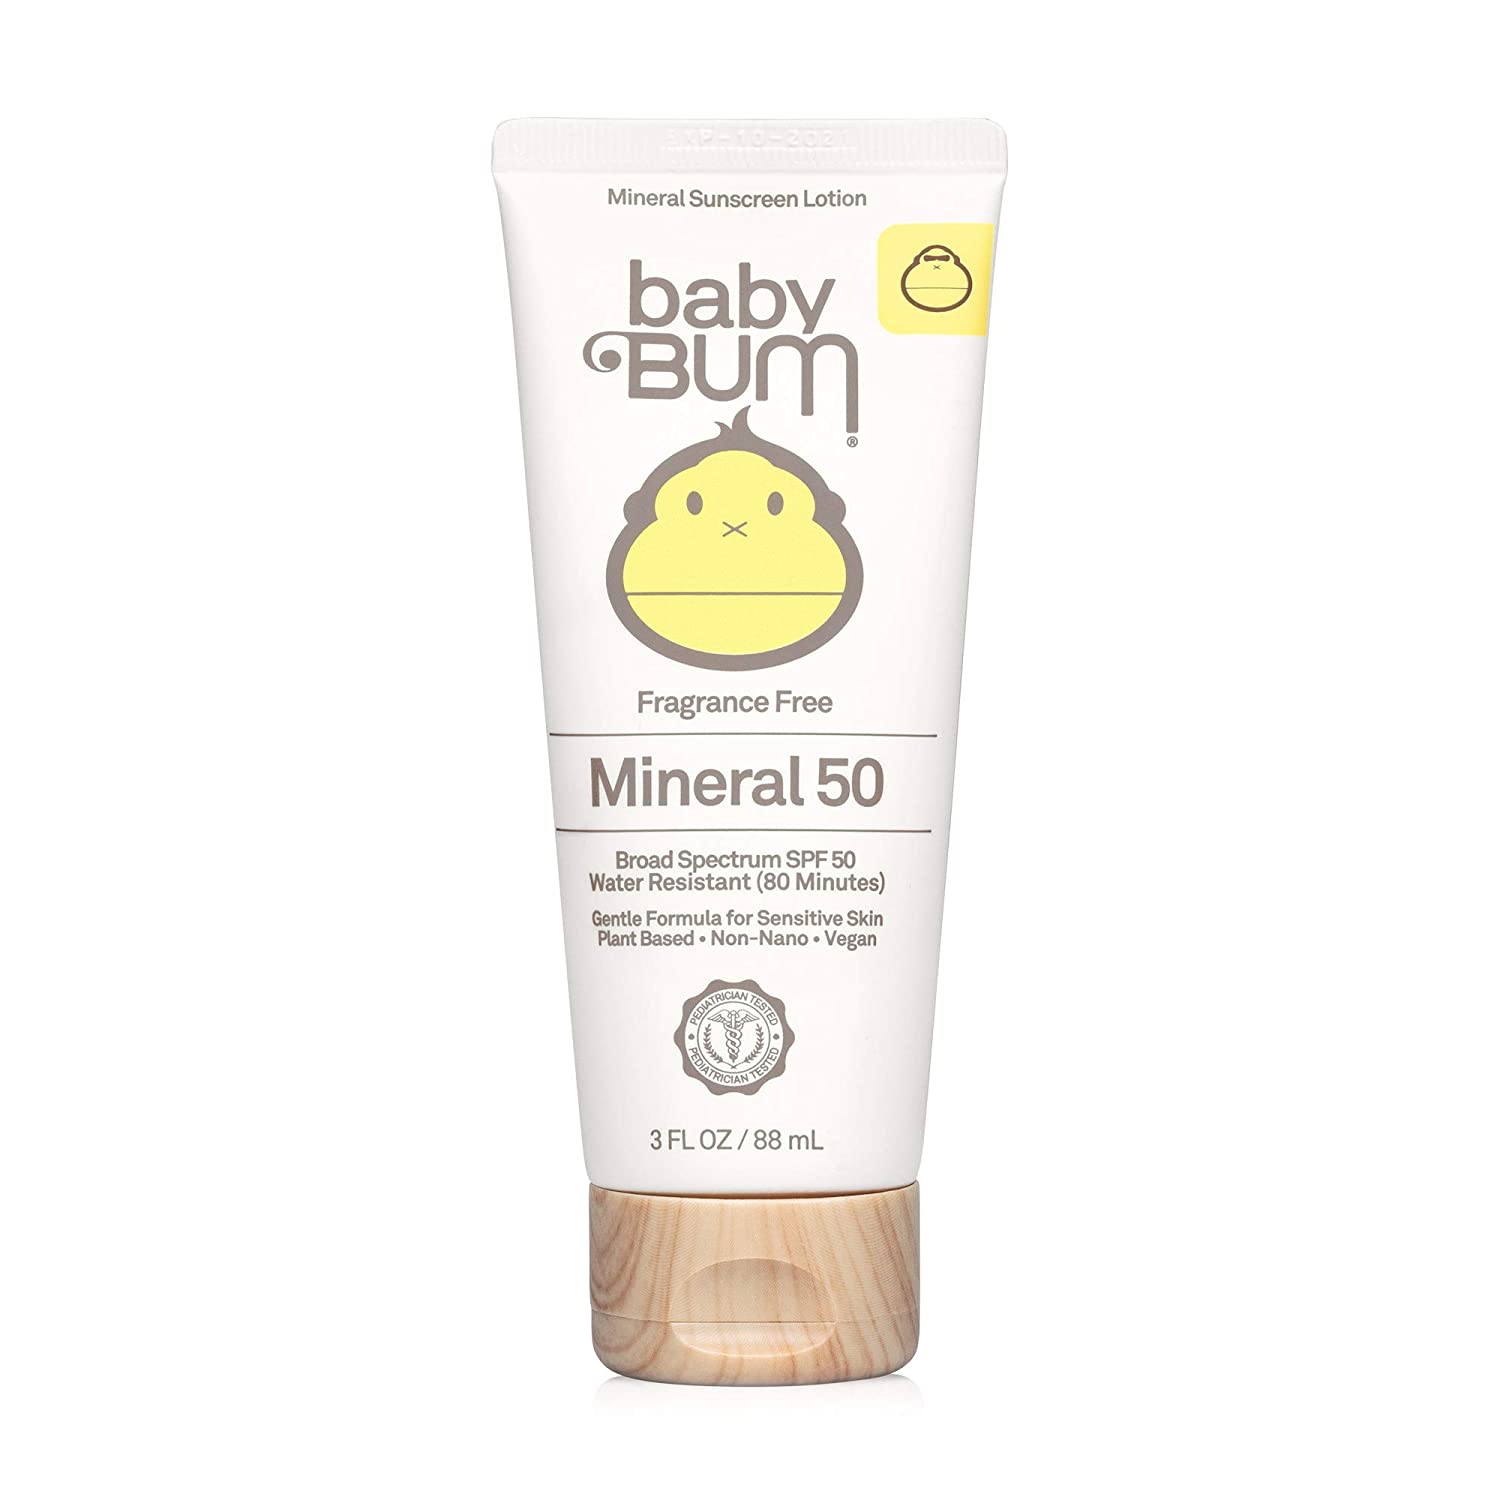 Baby Bum SPF 50 Sunscreen